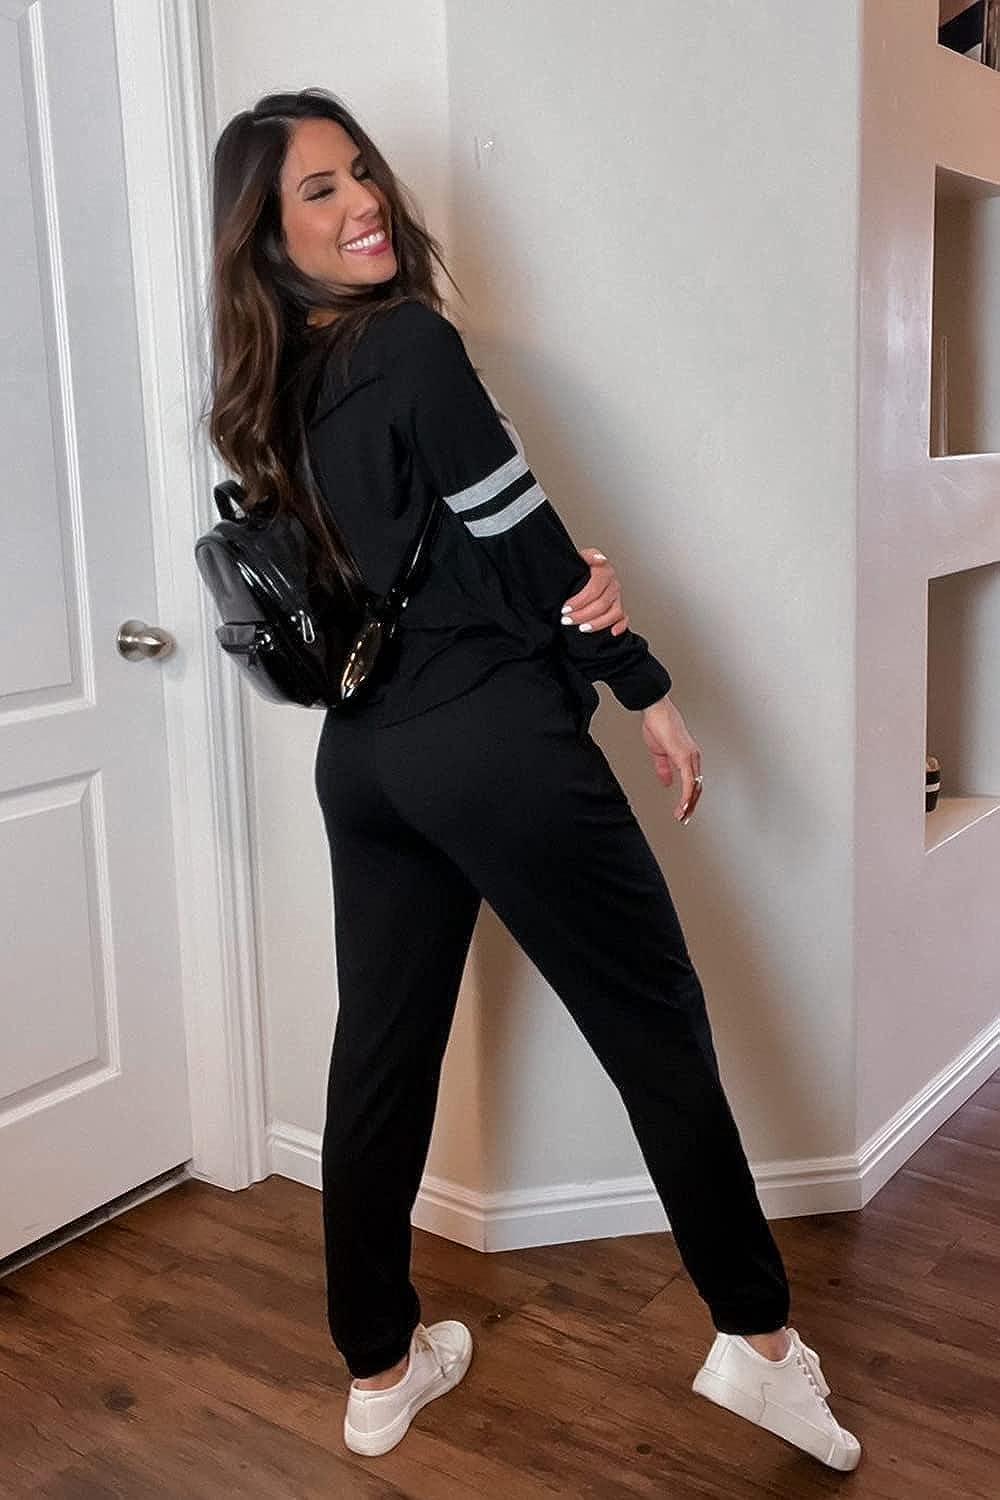 PRETTYGARDEN Women's Color Block 2 Piece Tracksuit Crewneck Long Sleeve  Tops Long Sweatpants Outfits Lounge Sets Black Medium